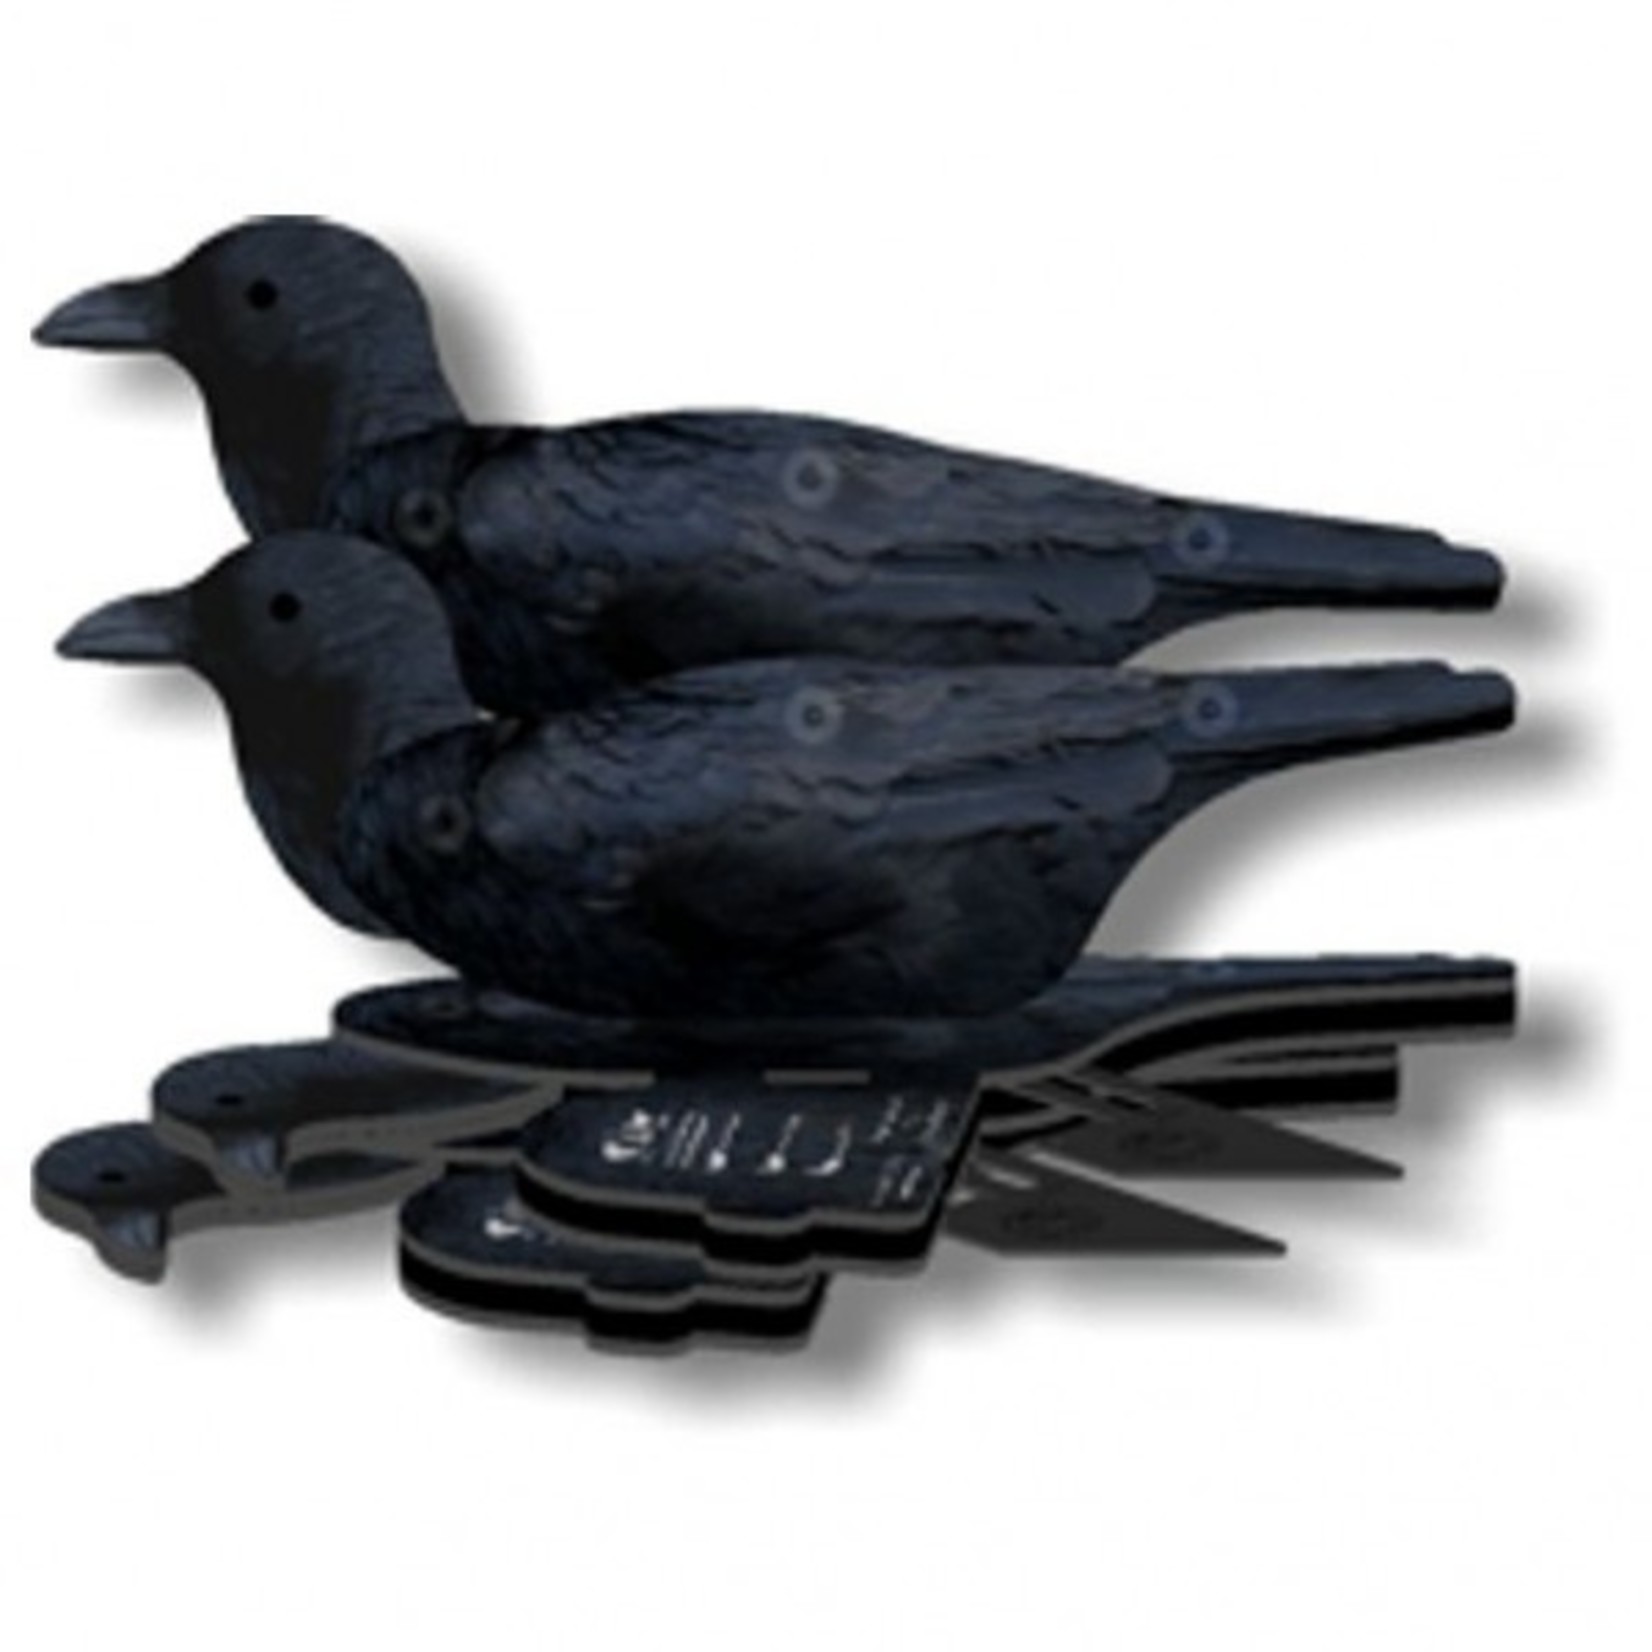 FUD crow 6pieces